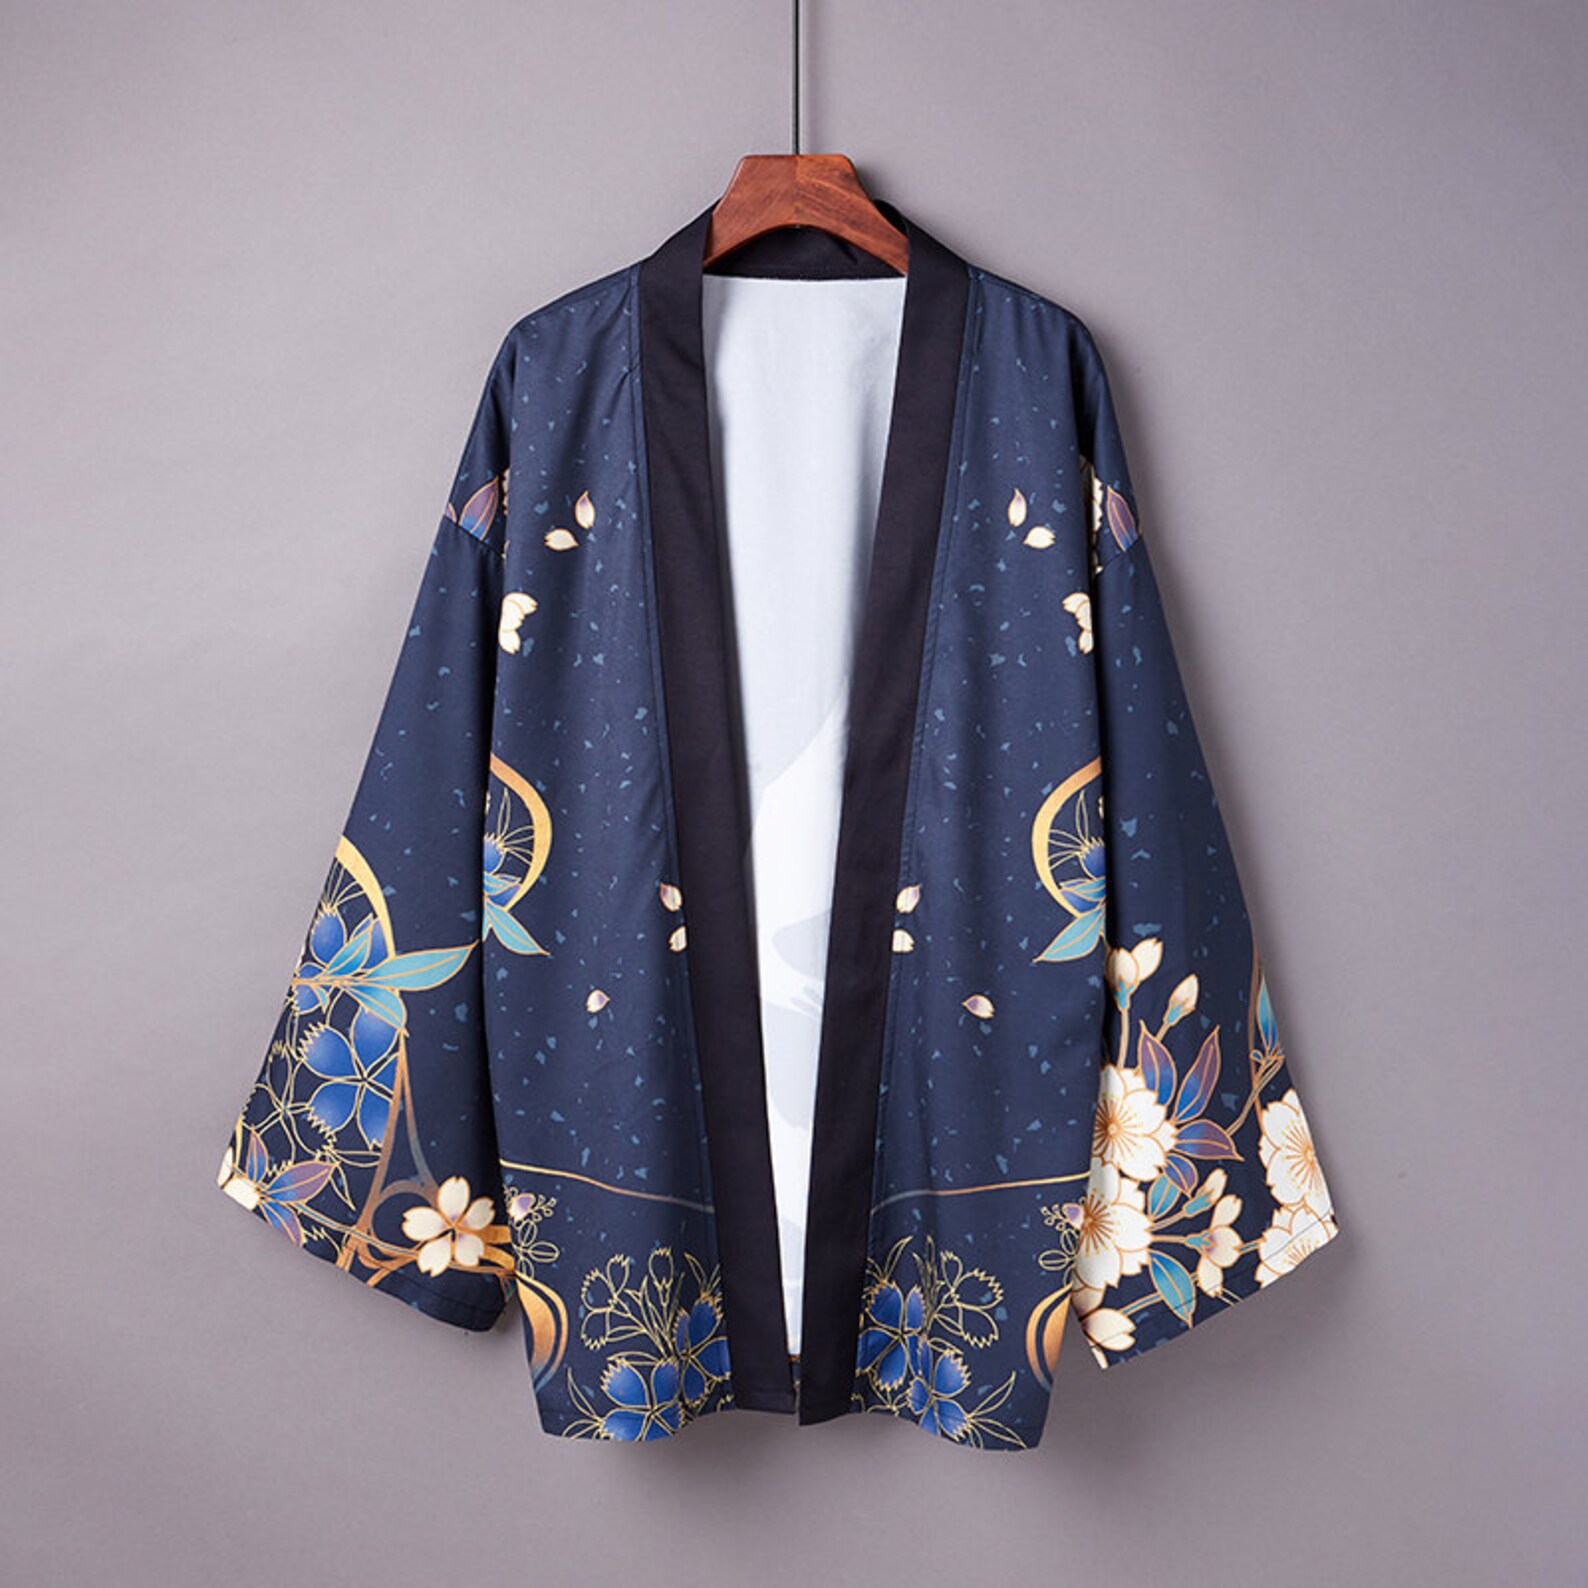 Kimono Haori Japanese Clothing Kimono Jacket Aesthetic - Etsy UK